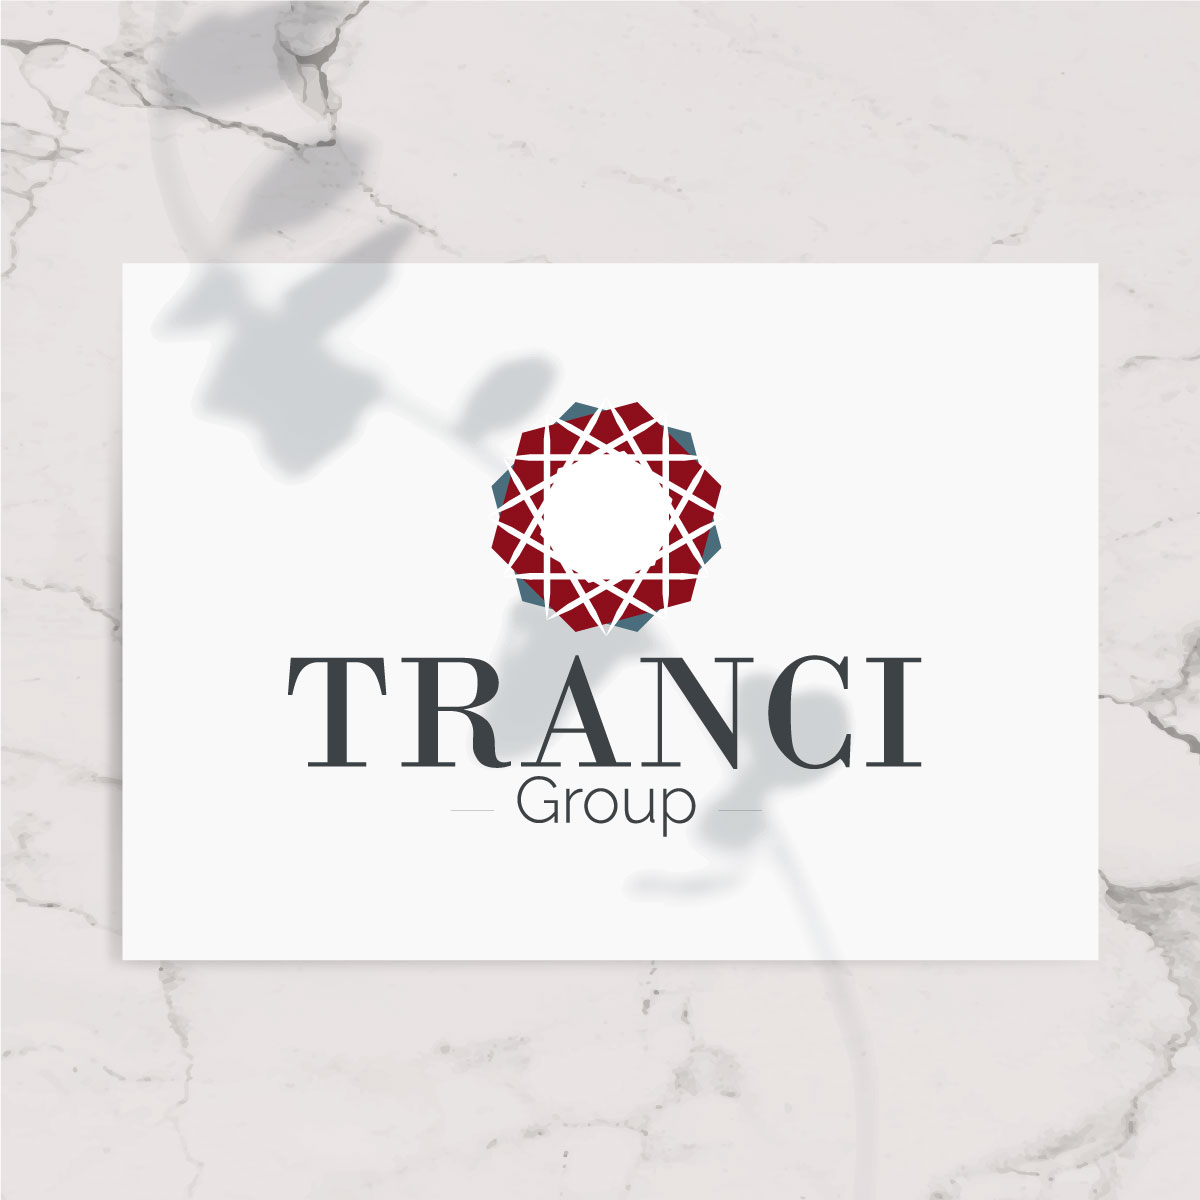 Tranci Group - Naming and Branding